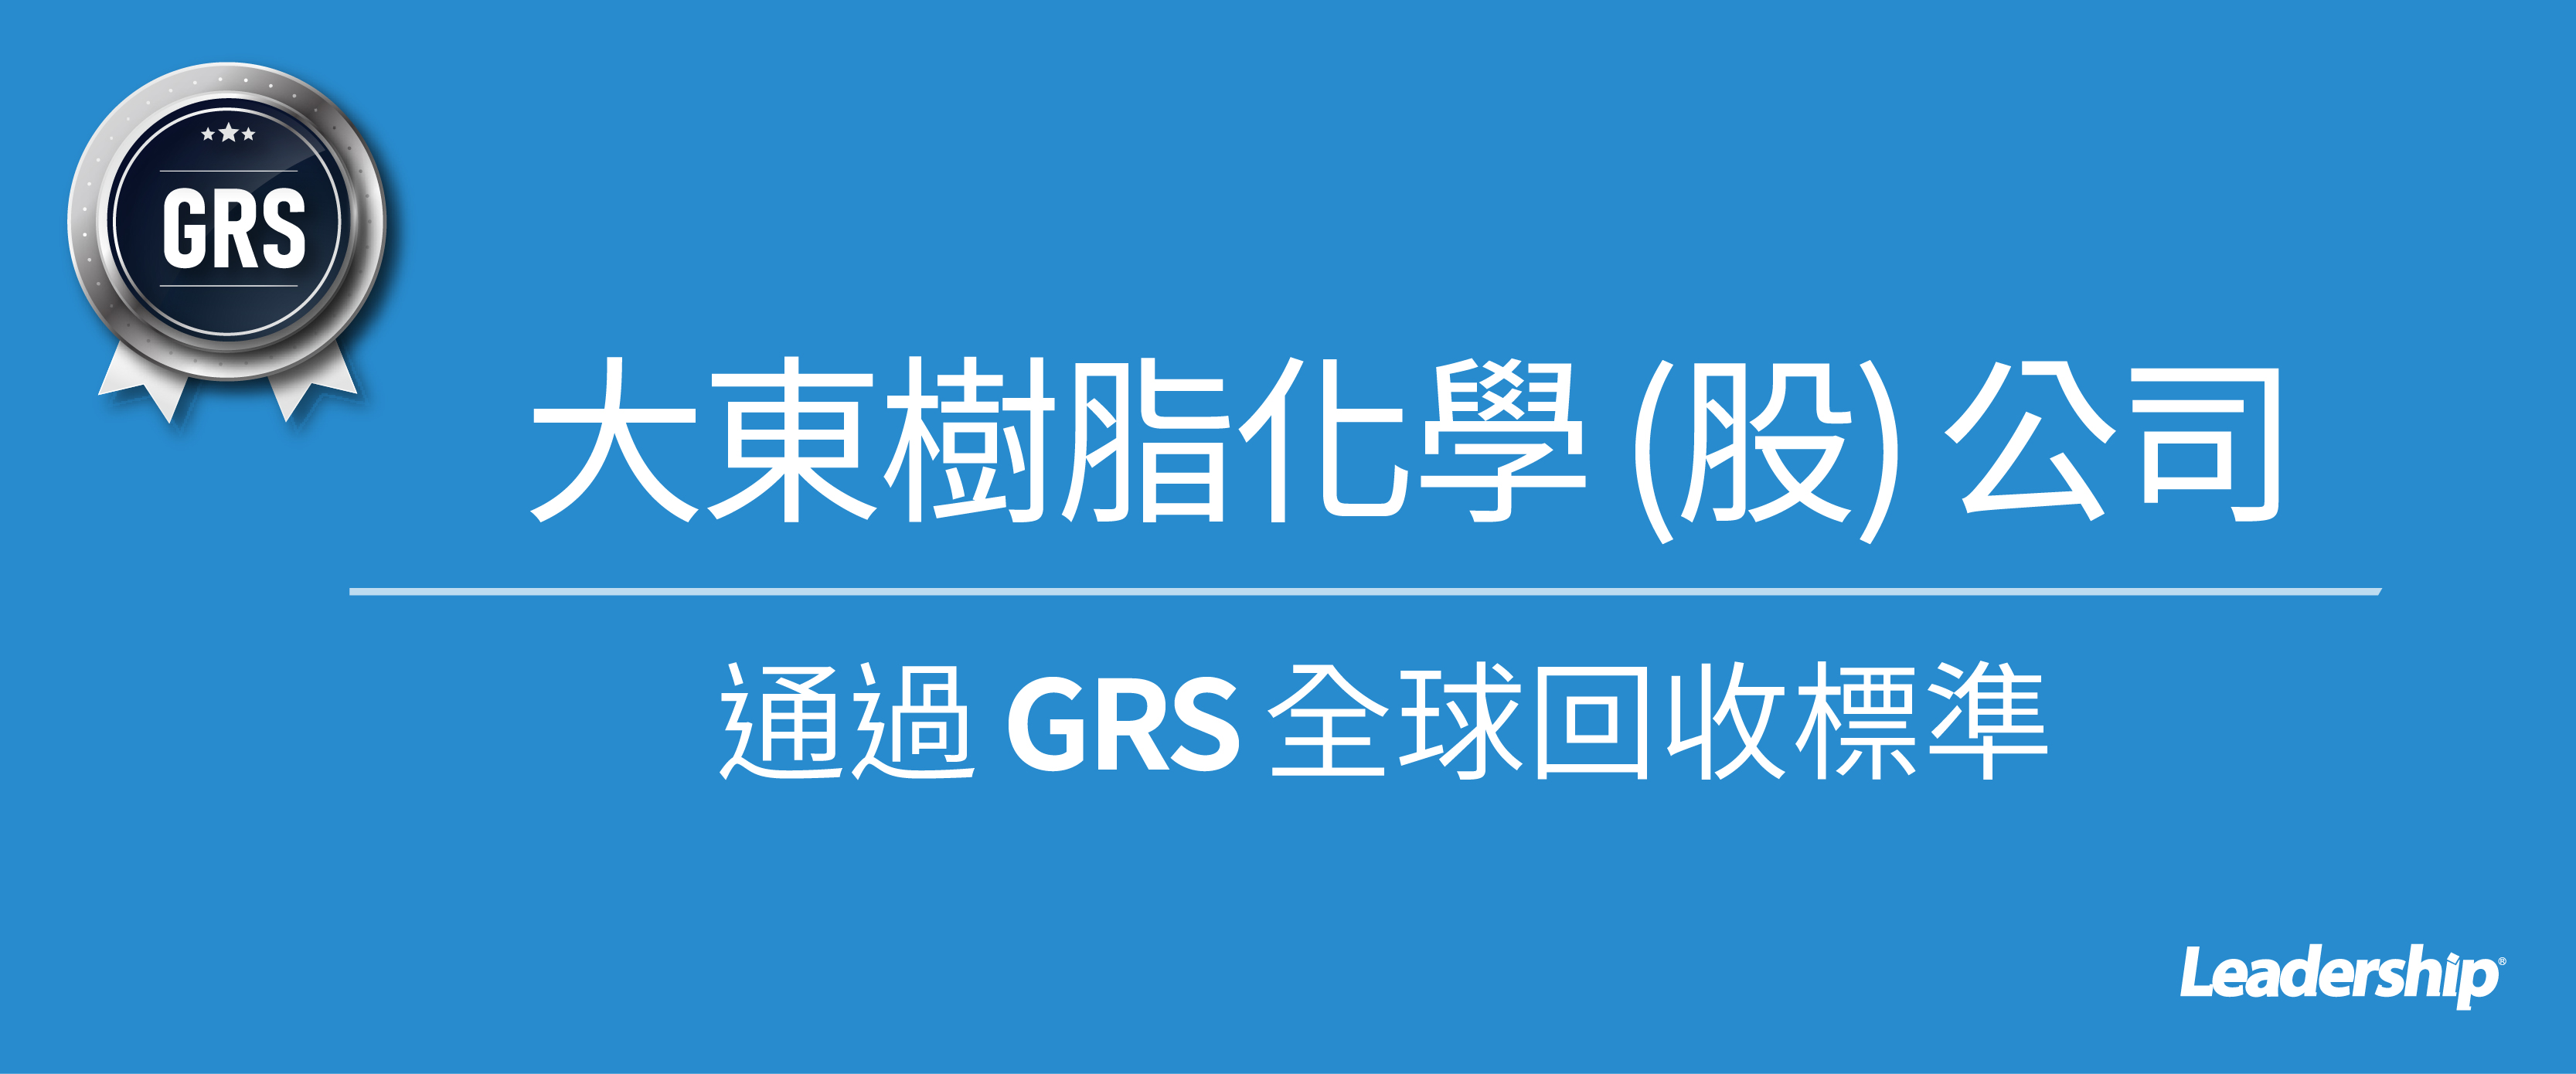 大東樹脂通過 GRS 全球回收標準認證